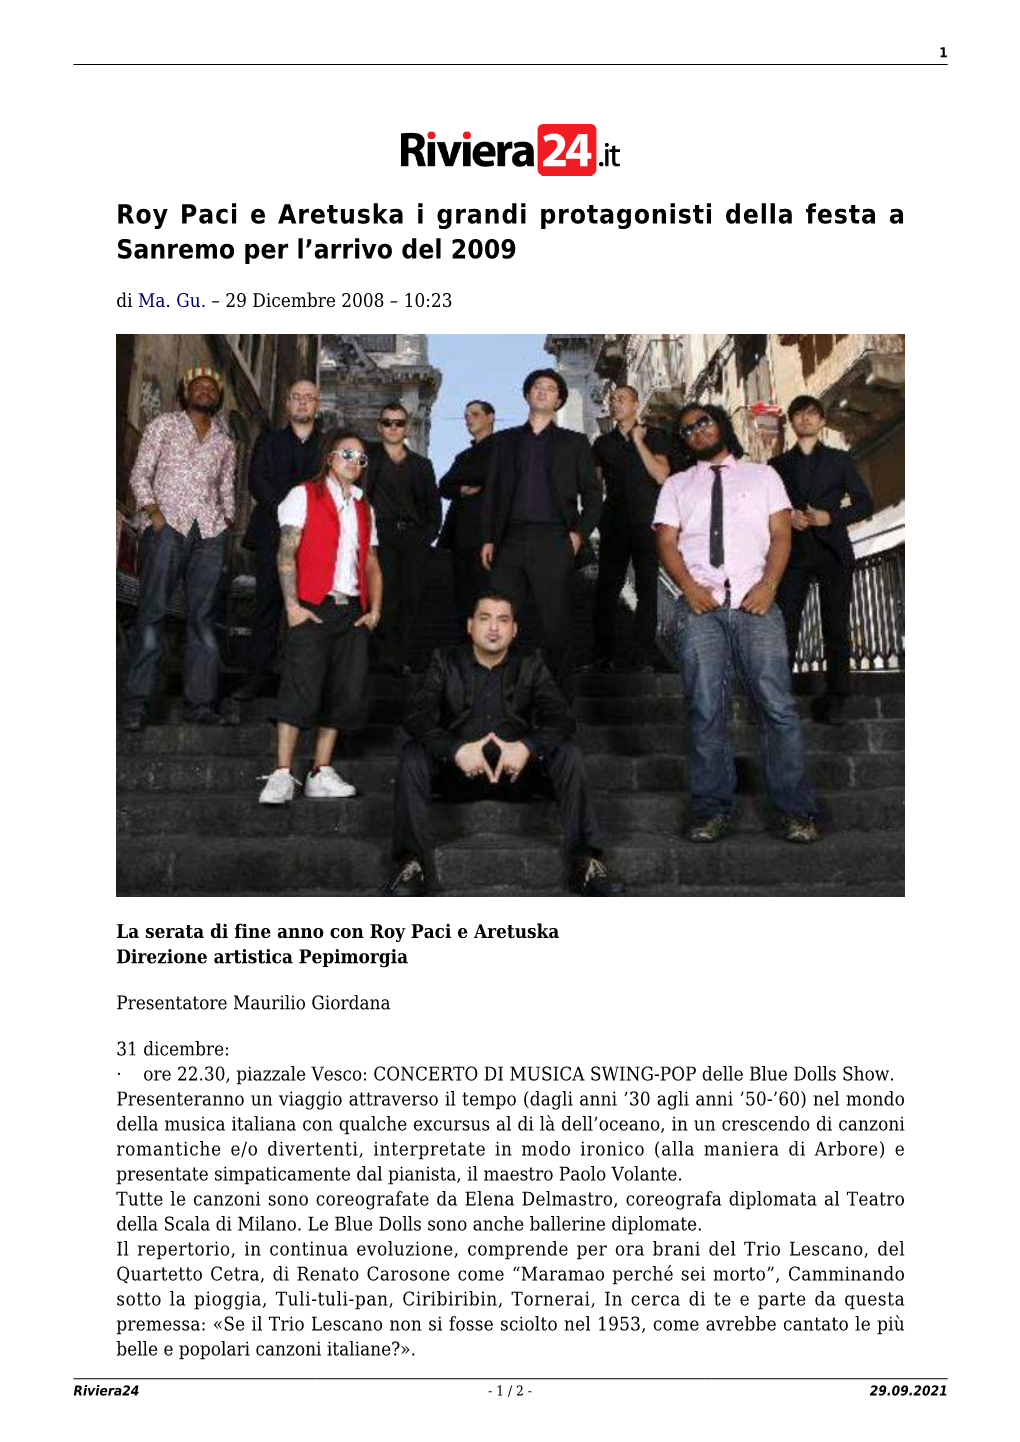 Roy Paci E Aretuska I Grandi Protagonisti Della Festa a Sanremo Per L’Arrivo Del 2009